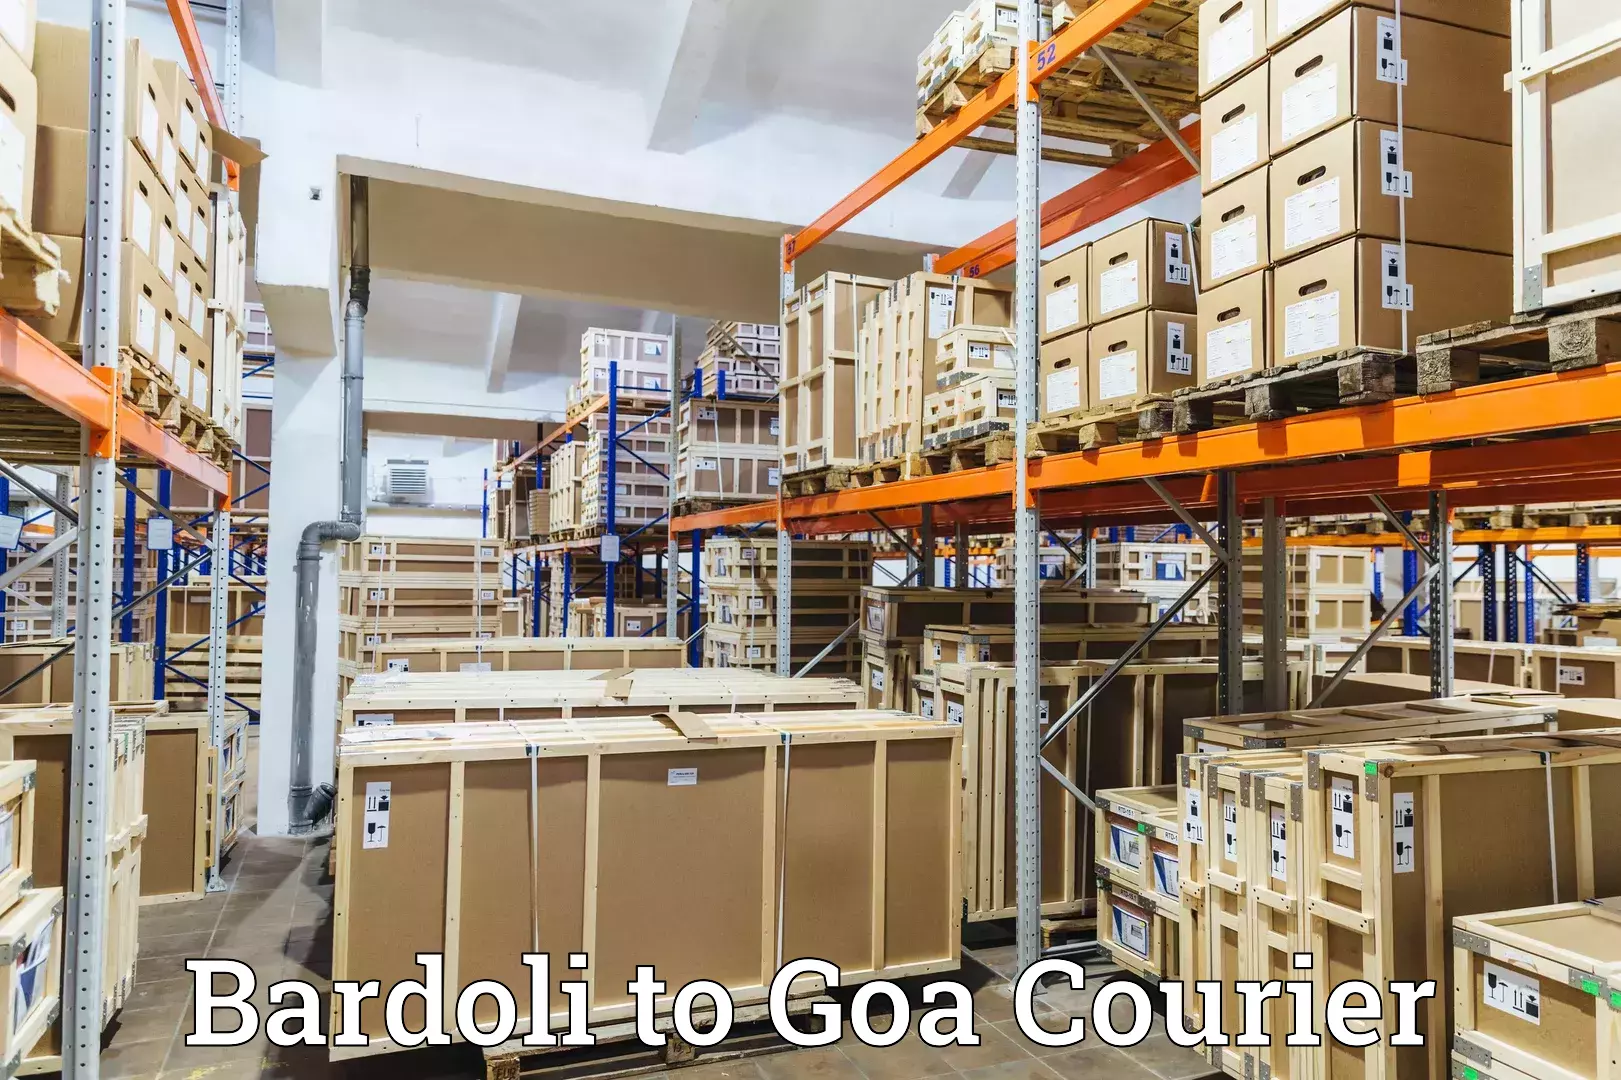 Online shipping calculator Bardoli to IIT Goa